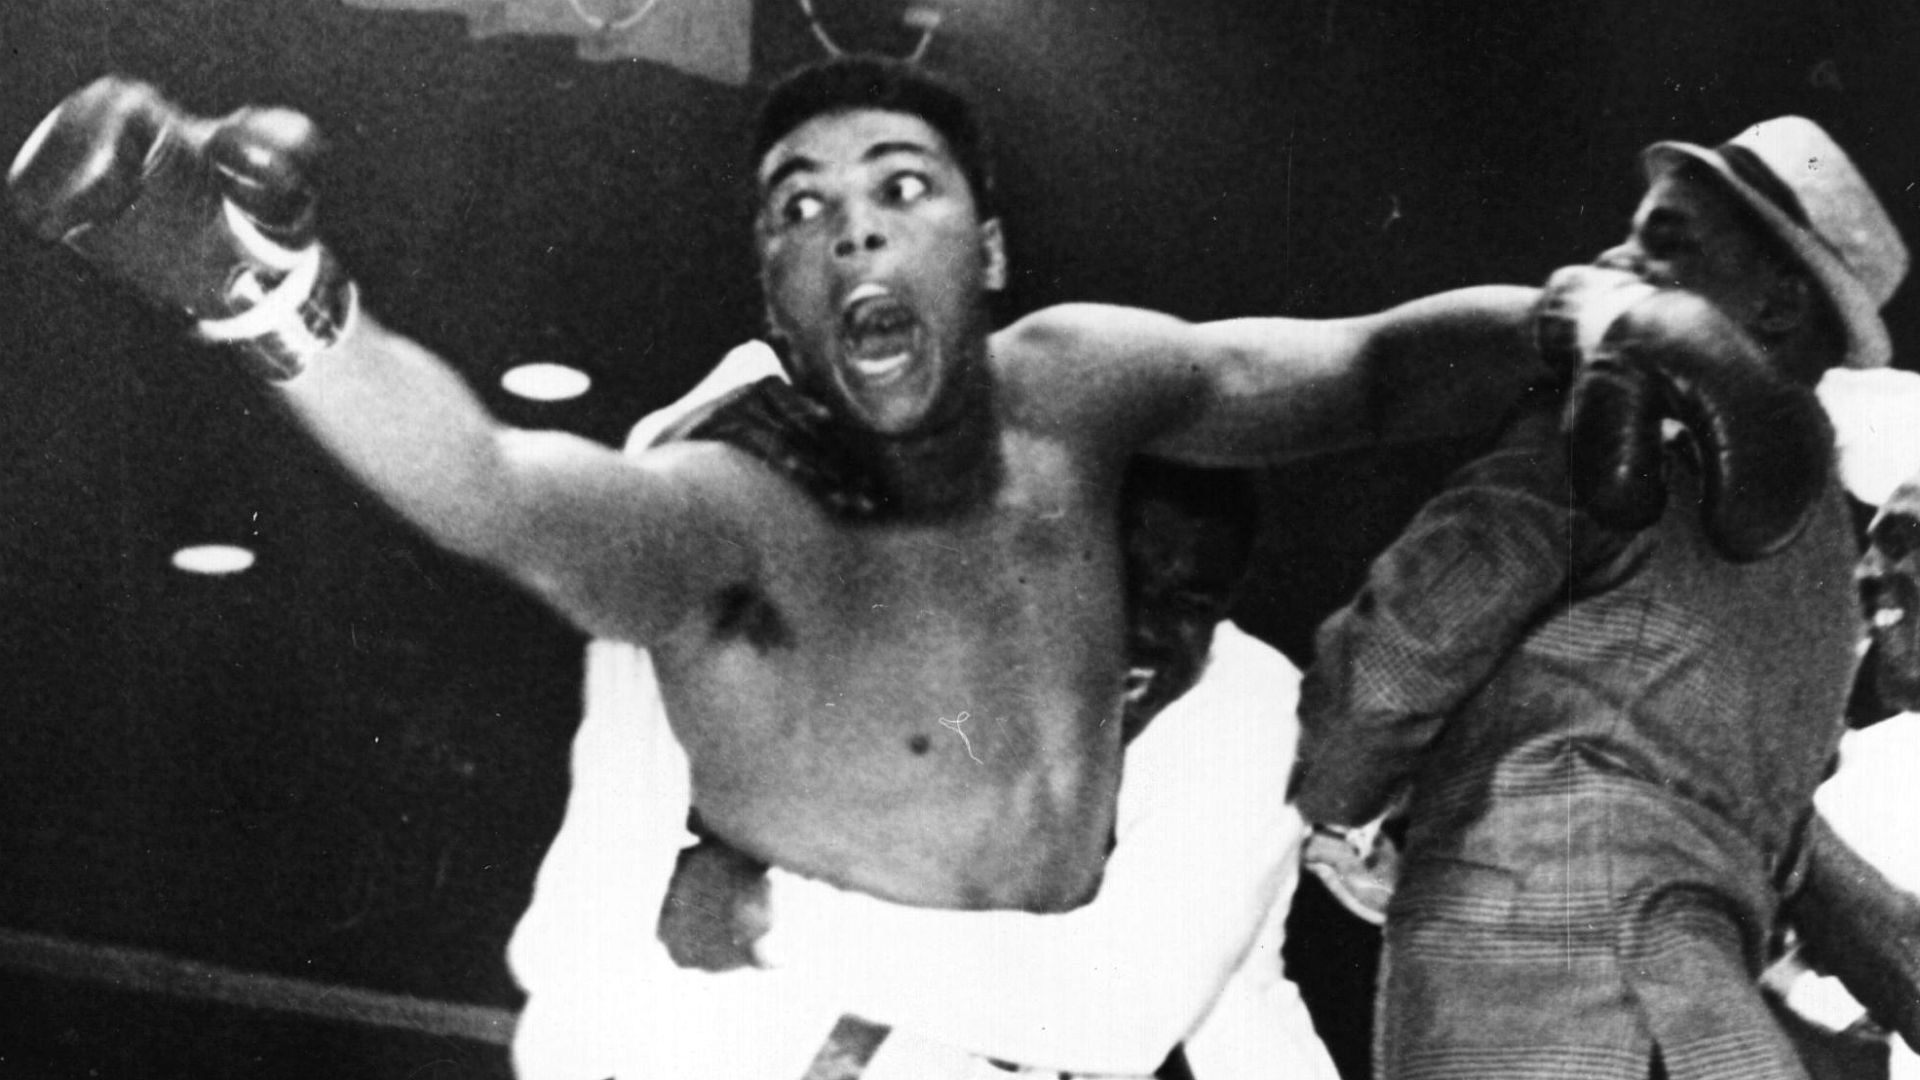 1920x1080 Vikings great Bud Grant wasn't a big fan of Muhammad Ali's showmanship |  NFL | Sporting News